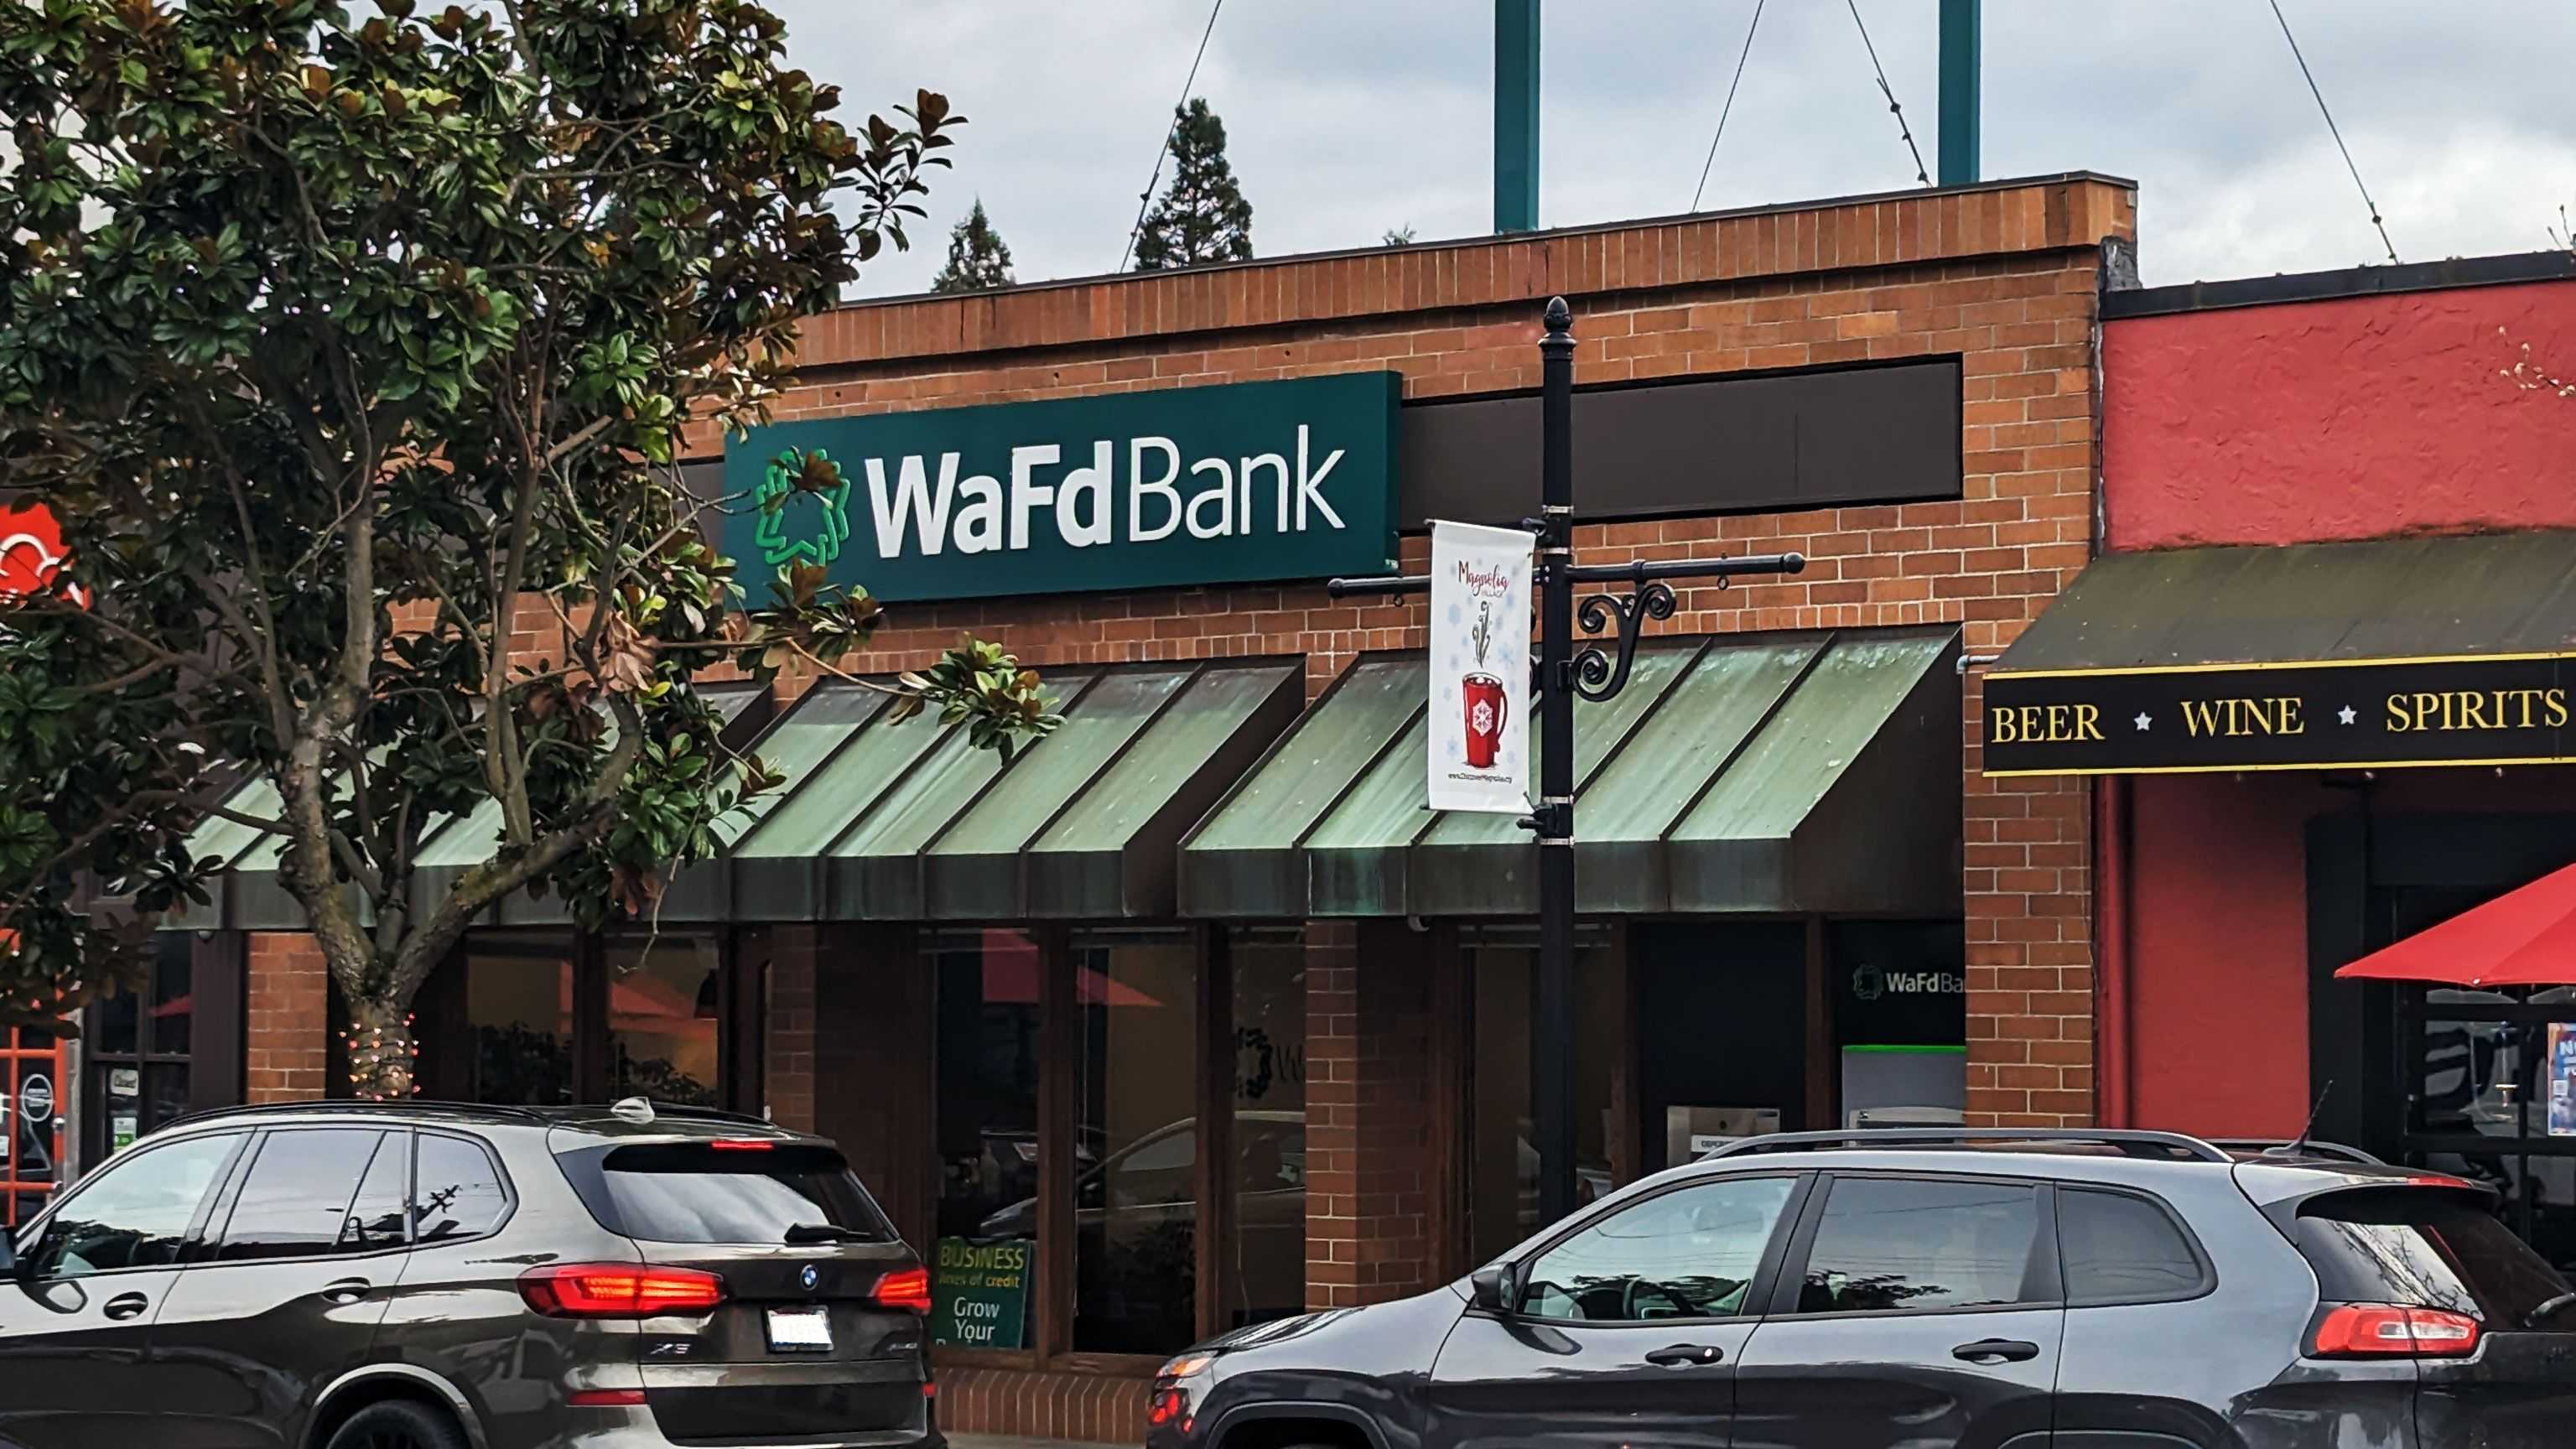 WaFd Bank in Seattle, Washington #1008 - Washington Federal.